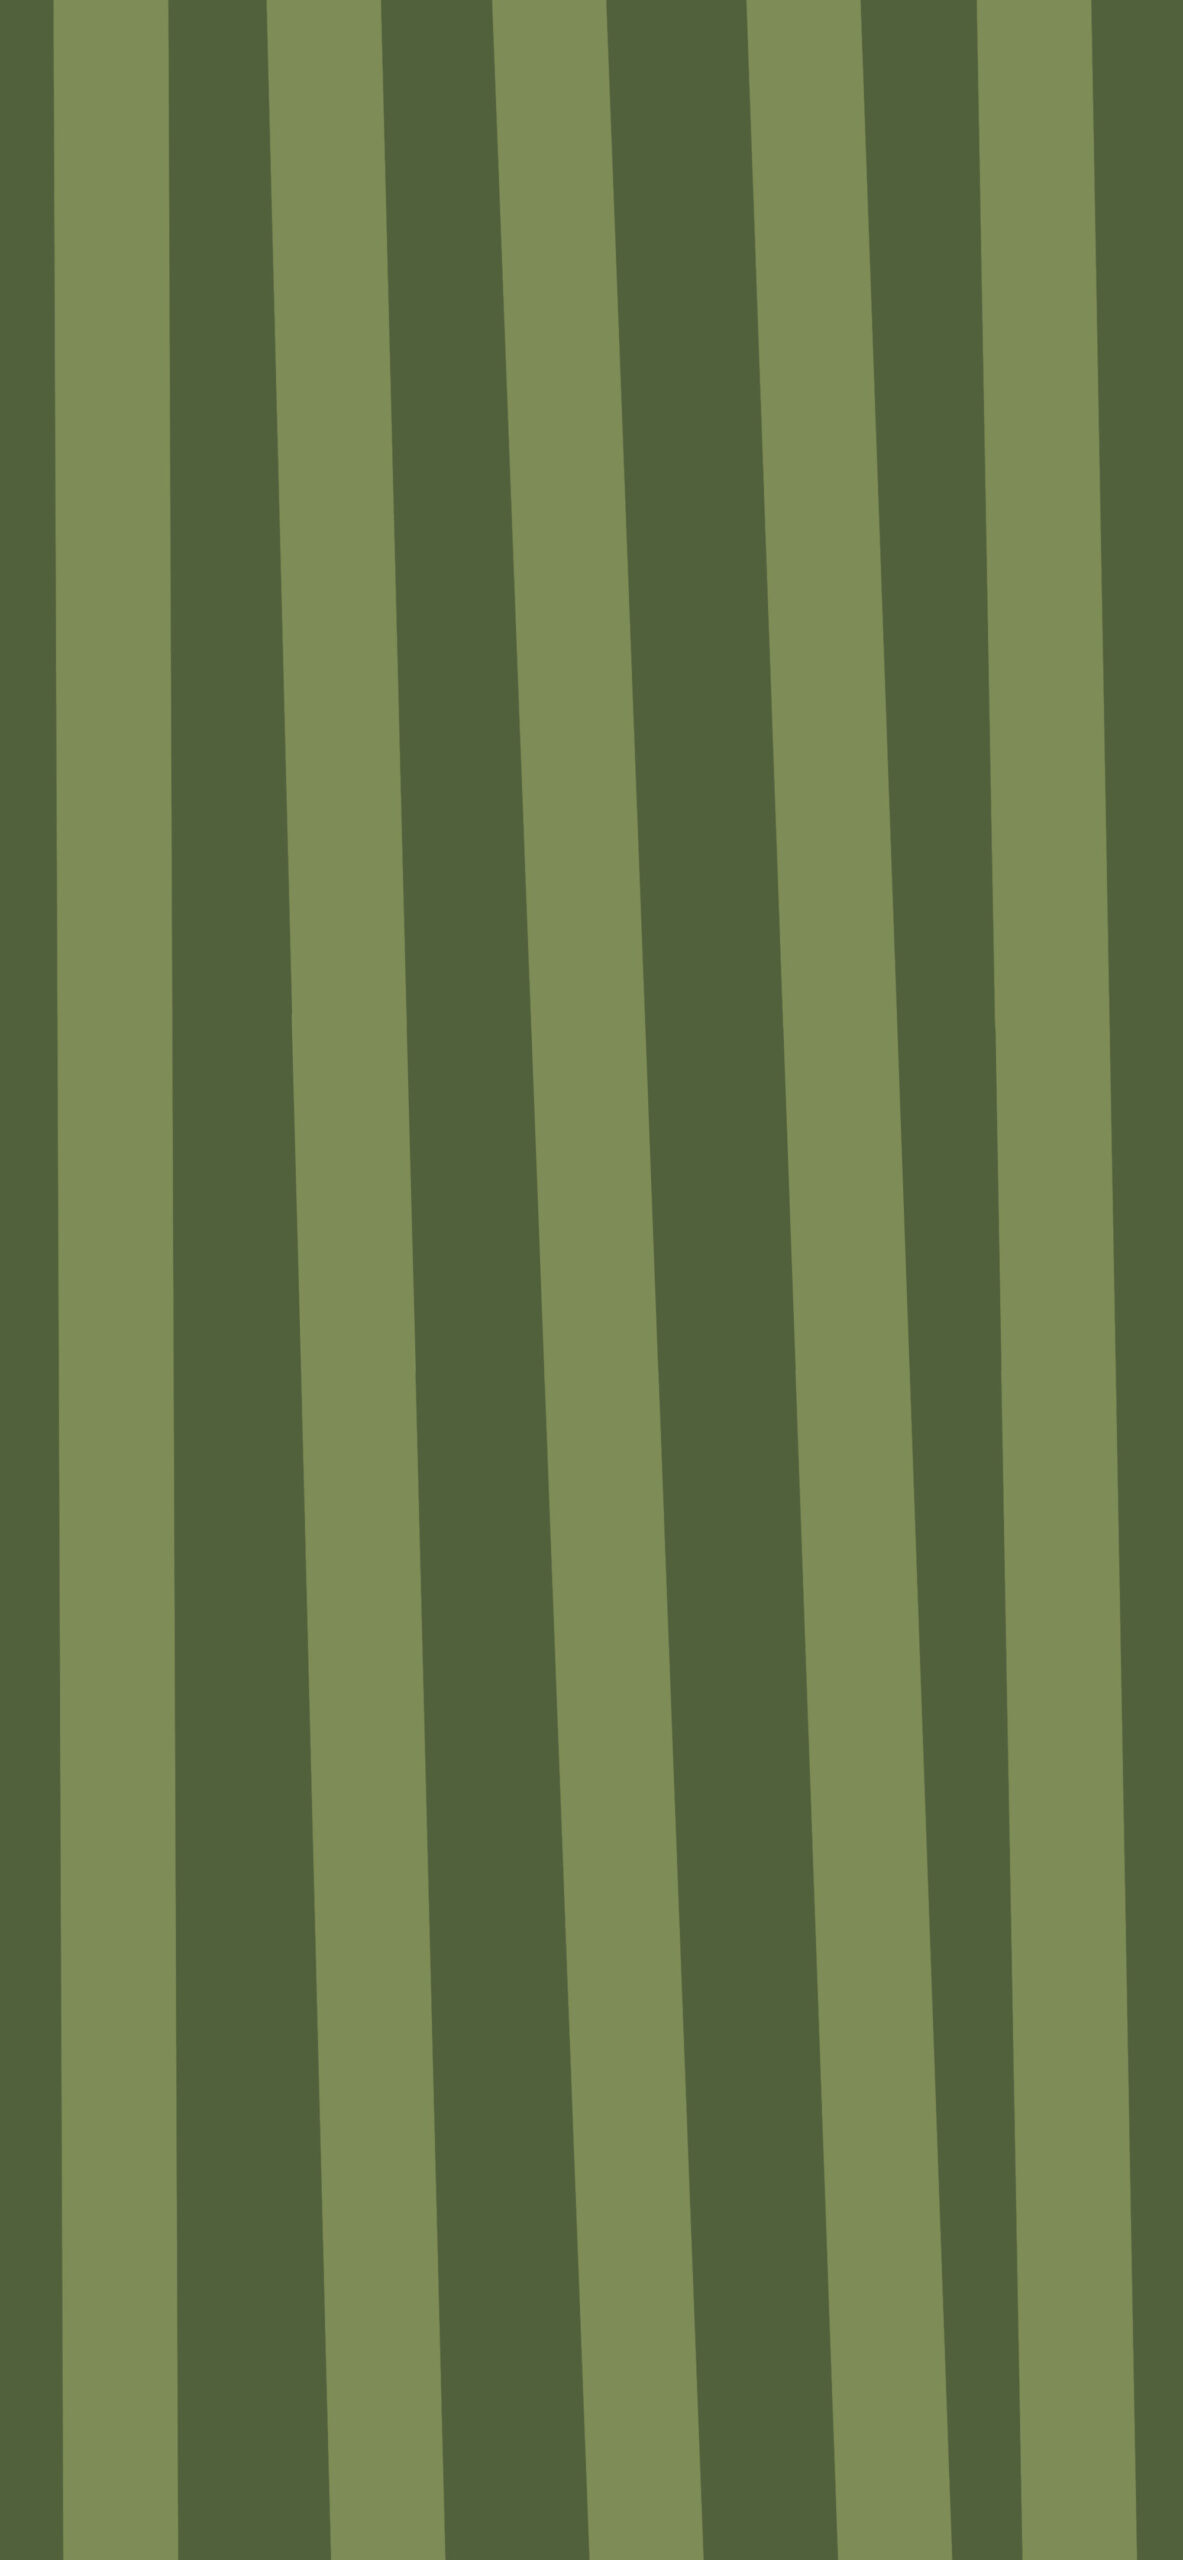 coraline logo green background